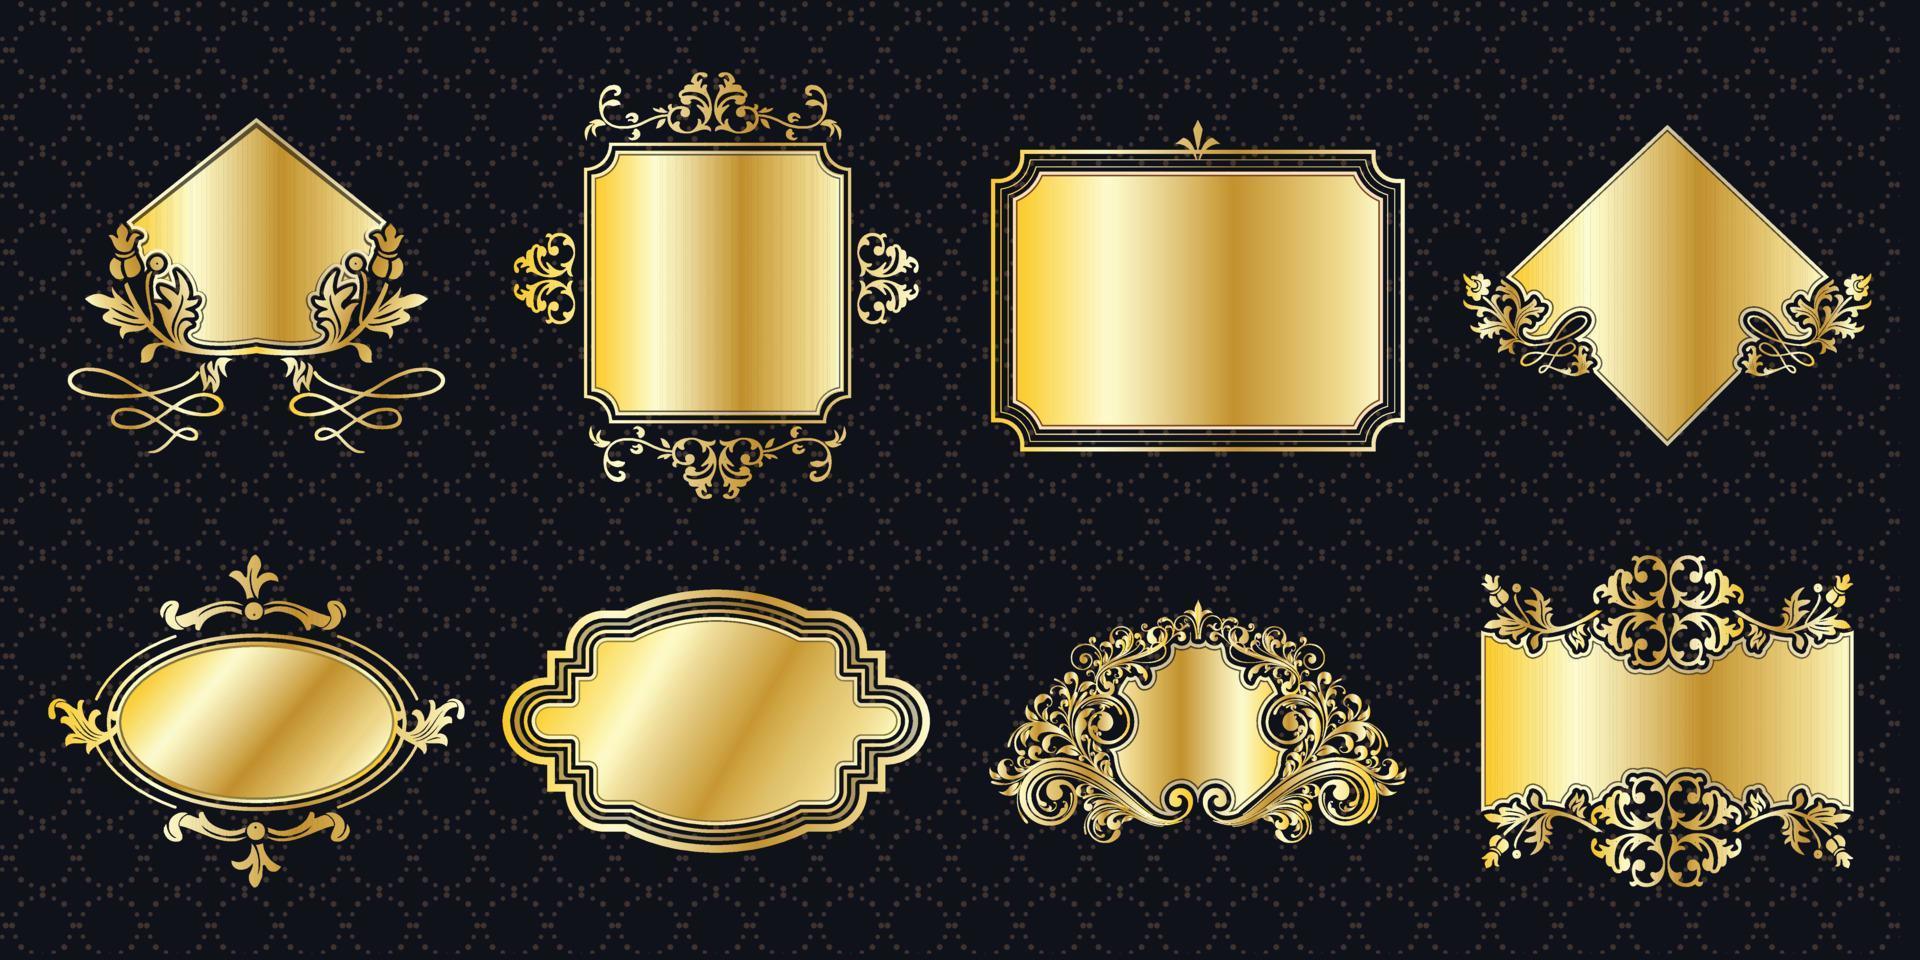 cornice set bordo ornato vintage dorato classico ornamentale elementi antichi banner grafico decorationelegant bundle di raccolta vettore